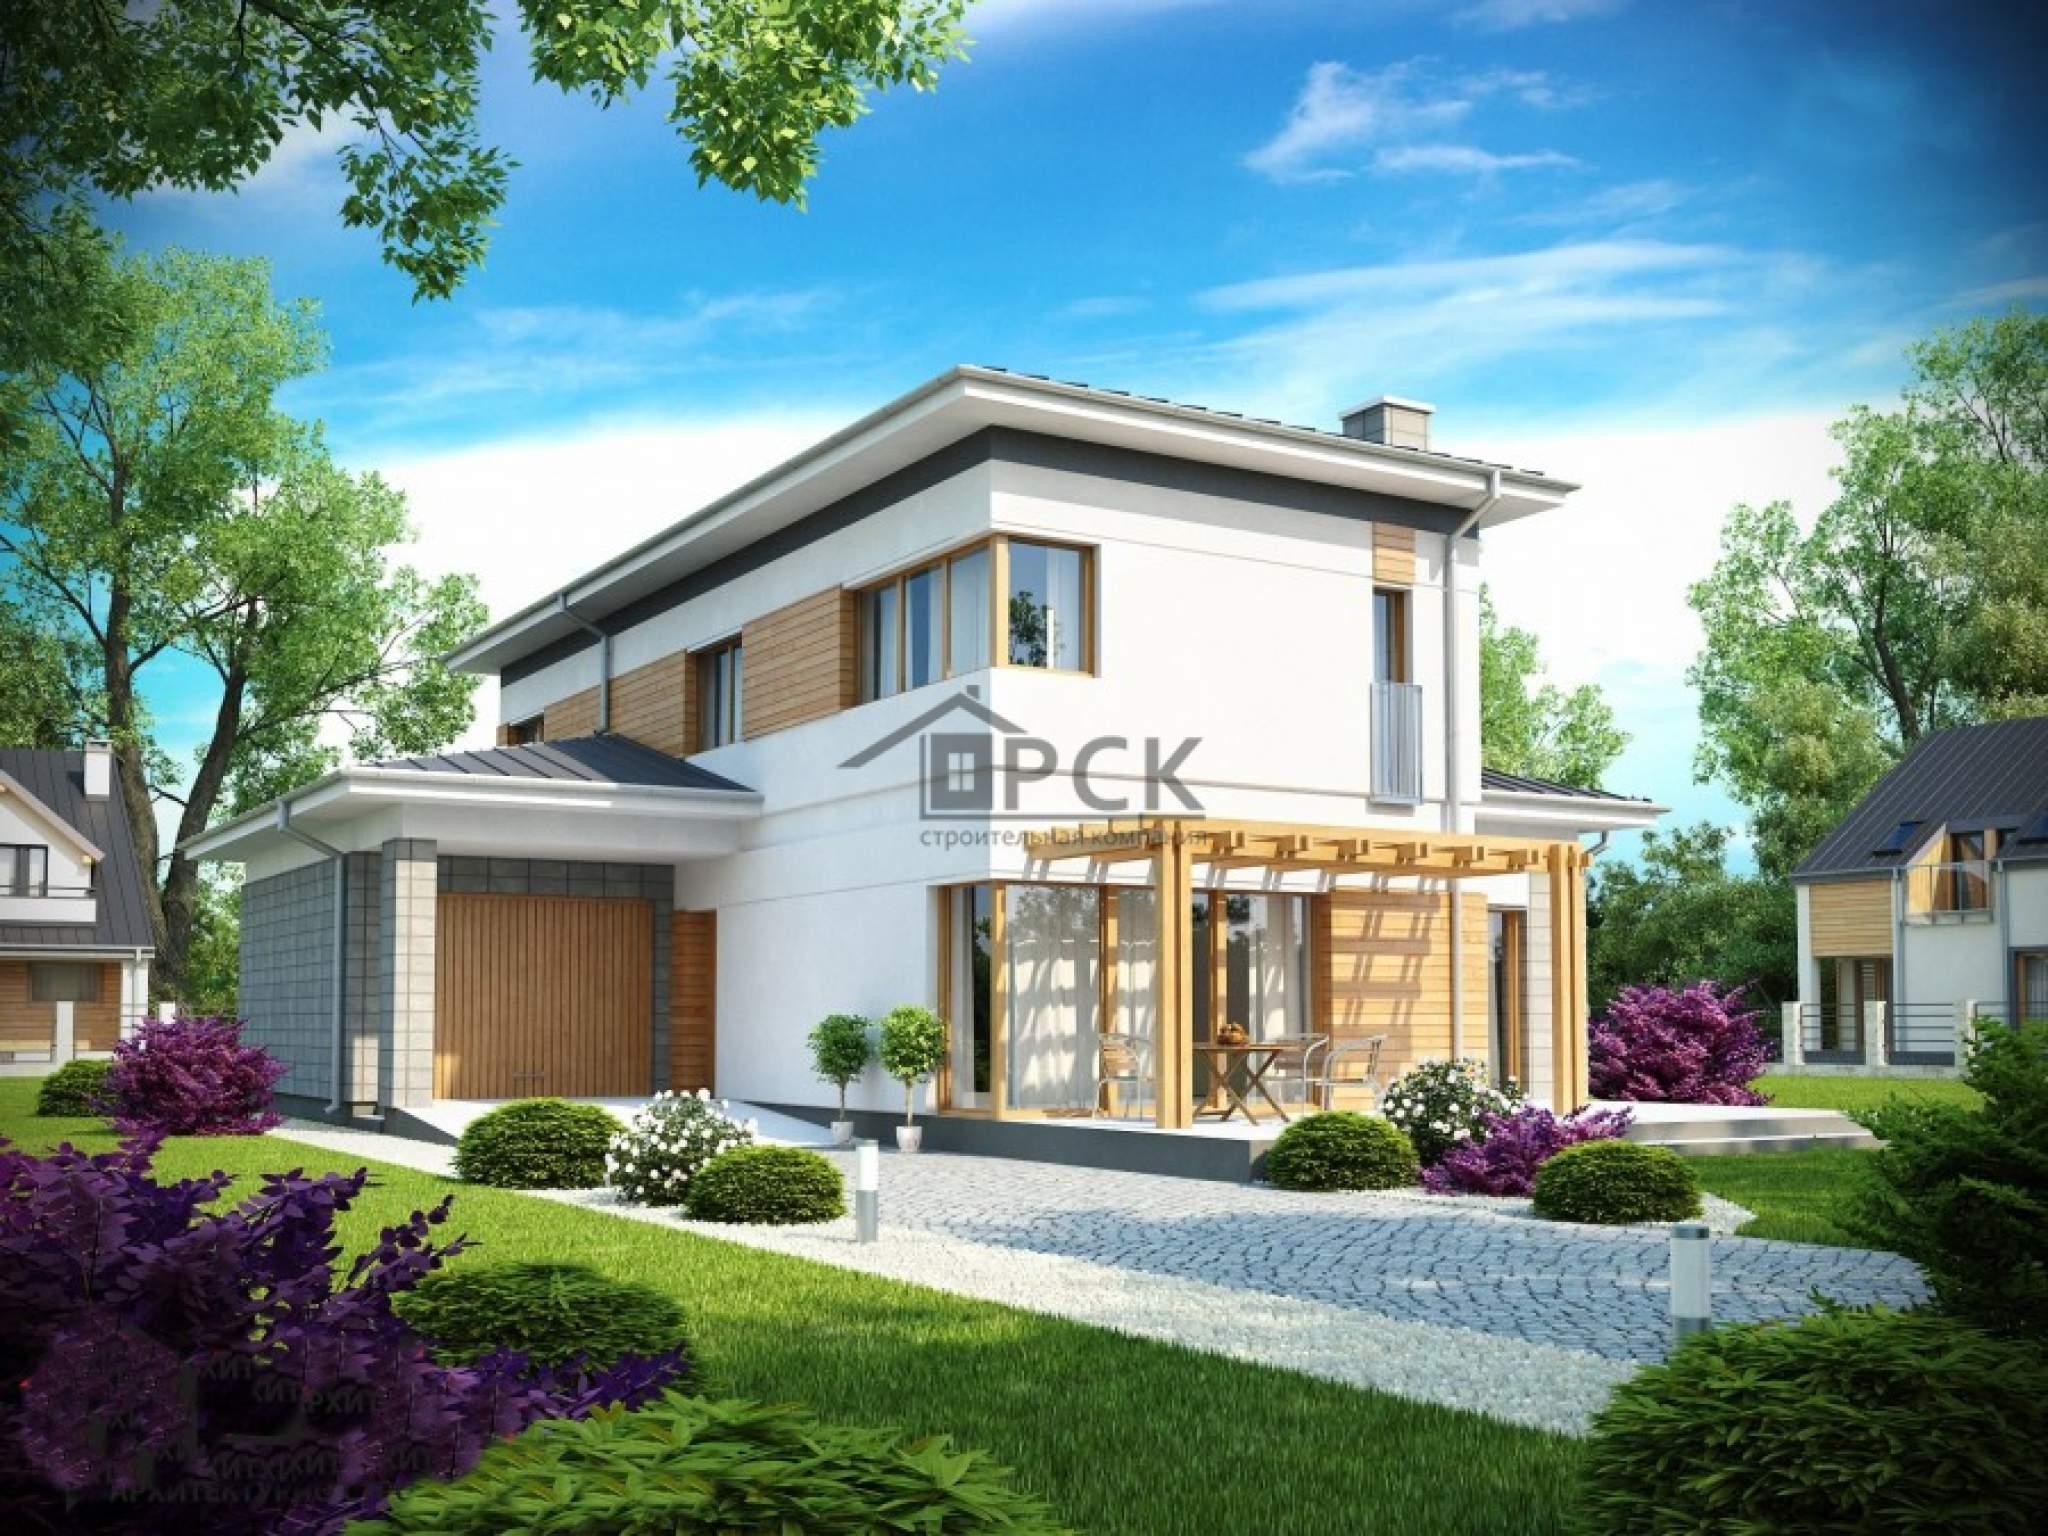  домов и коттеджей в стиле модерн » Современный дизайн на Vip-1gl